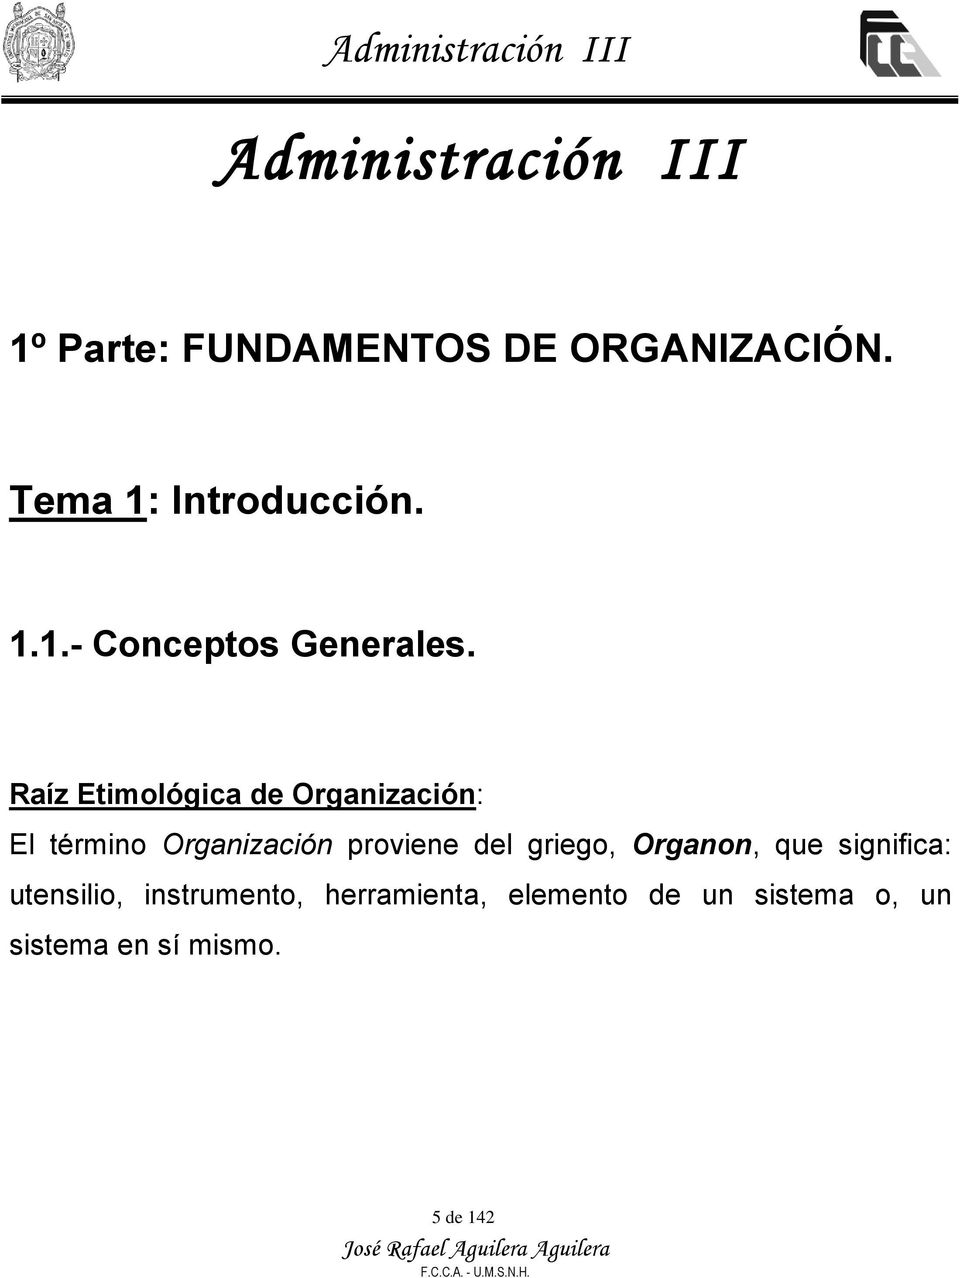 Raíz Etimológica de Organización: El término Organización proviene del